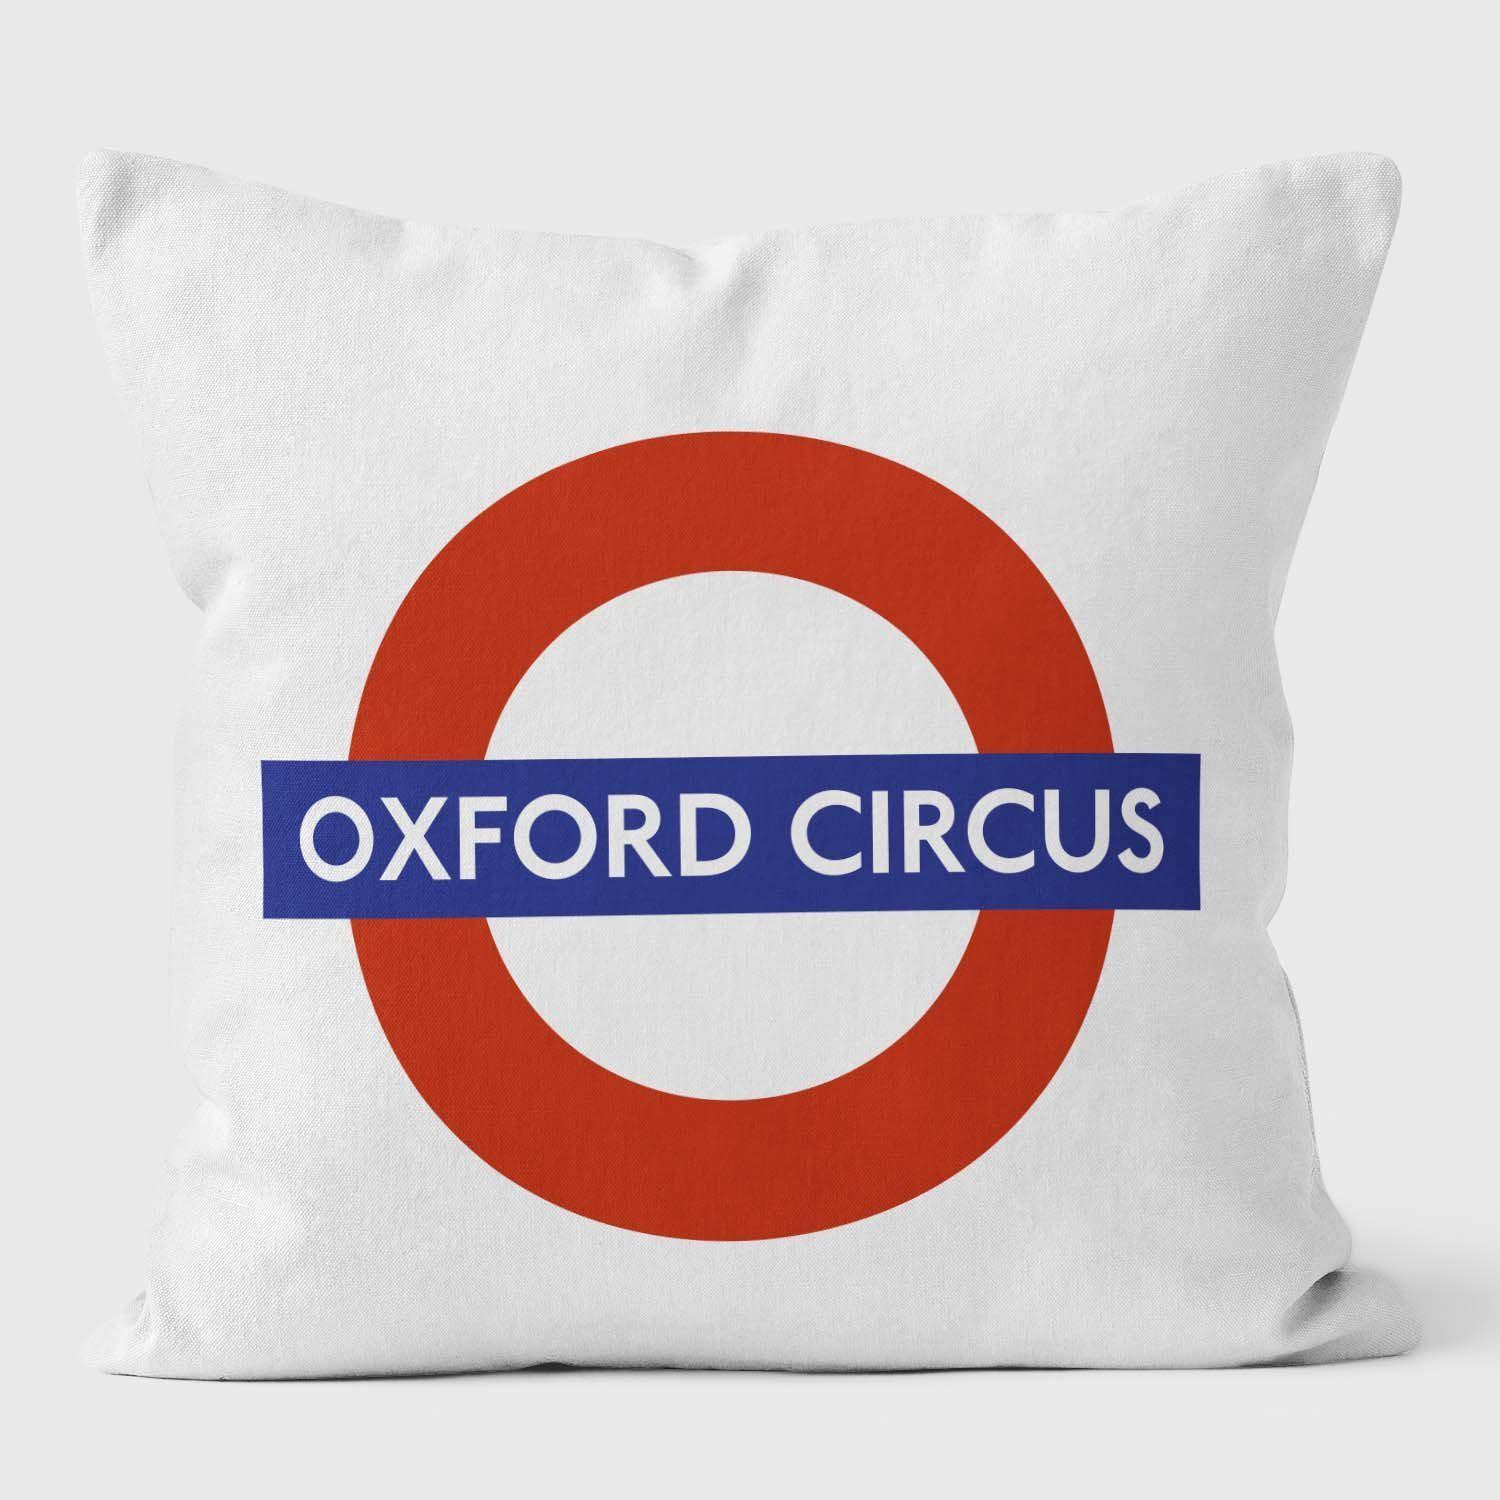 Oxford Circus London Underground Tube Station Roundel Cushion - Handmade Cushions UK - WeLoveCushions